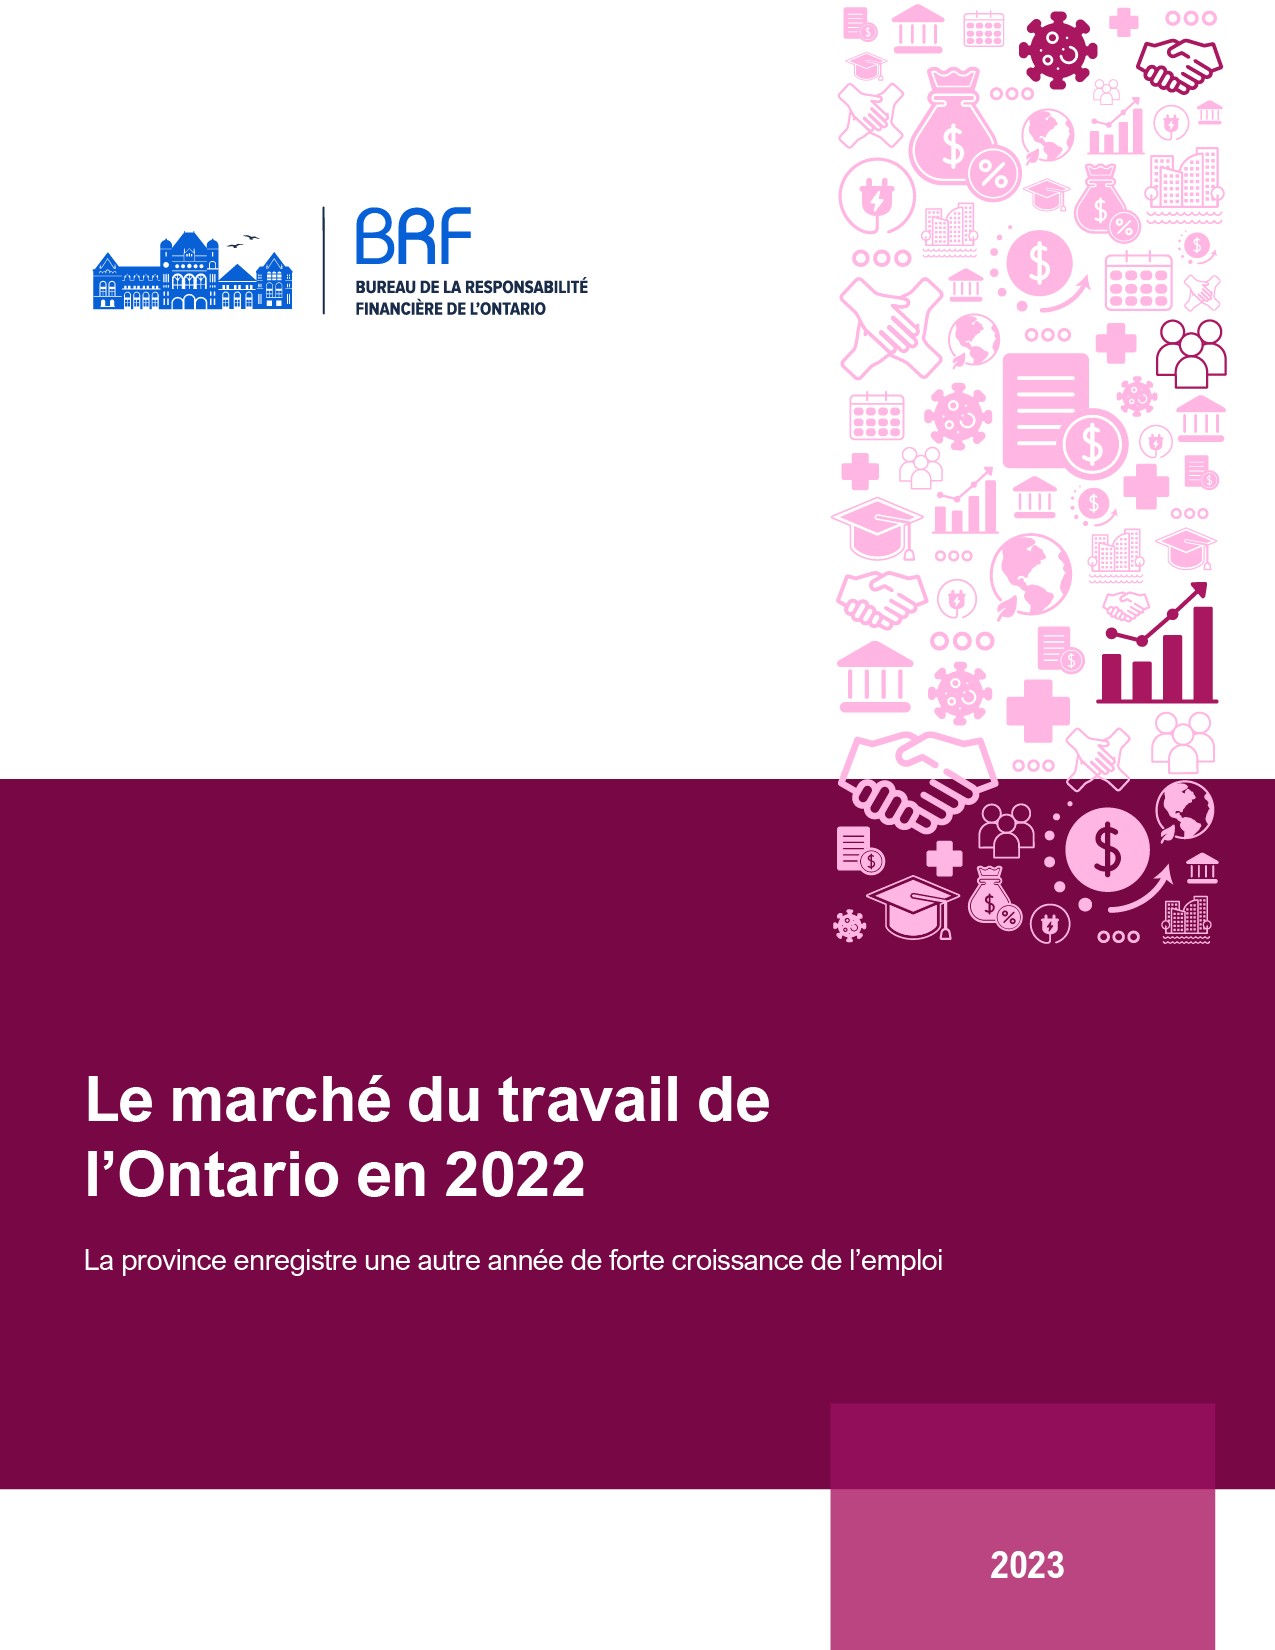 Le marché du travail de l’Ontario en 2022